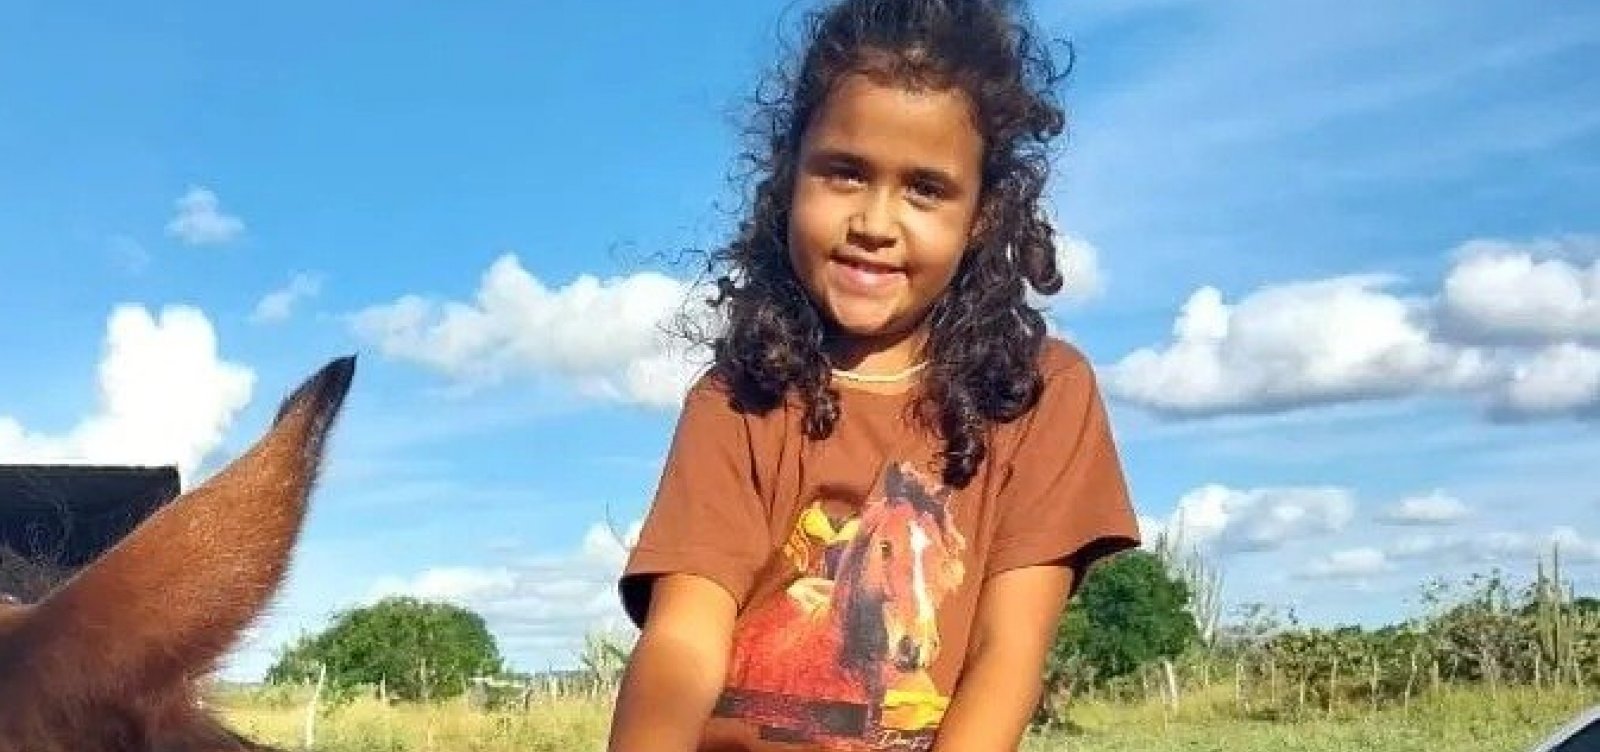 Menina de 6 anos desaparecida no interior da Bahia é encontrada morta 